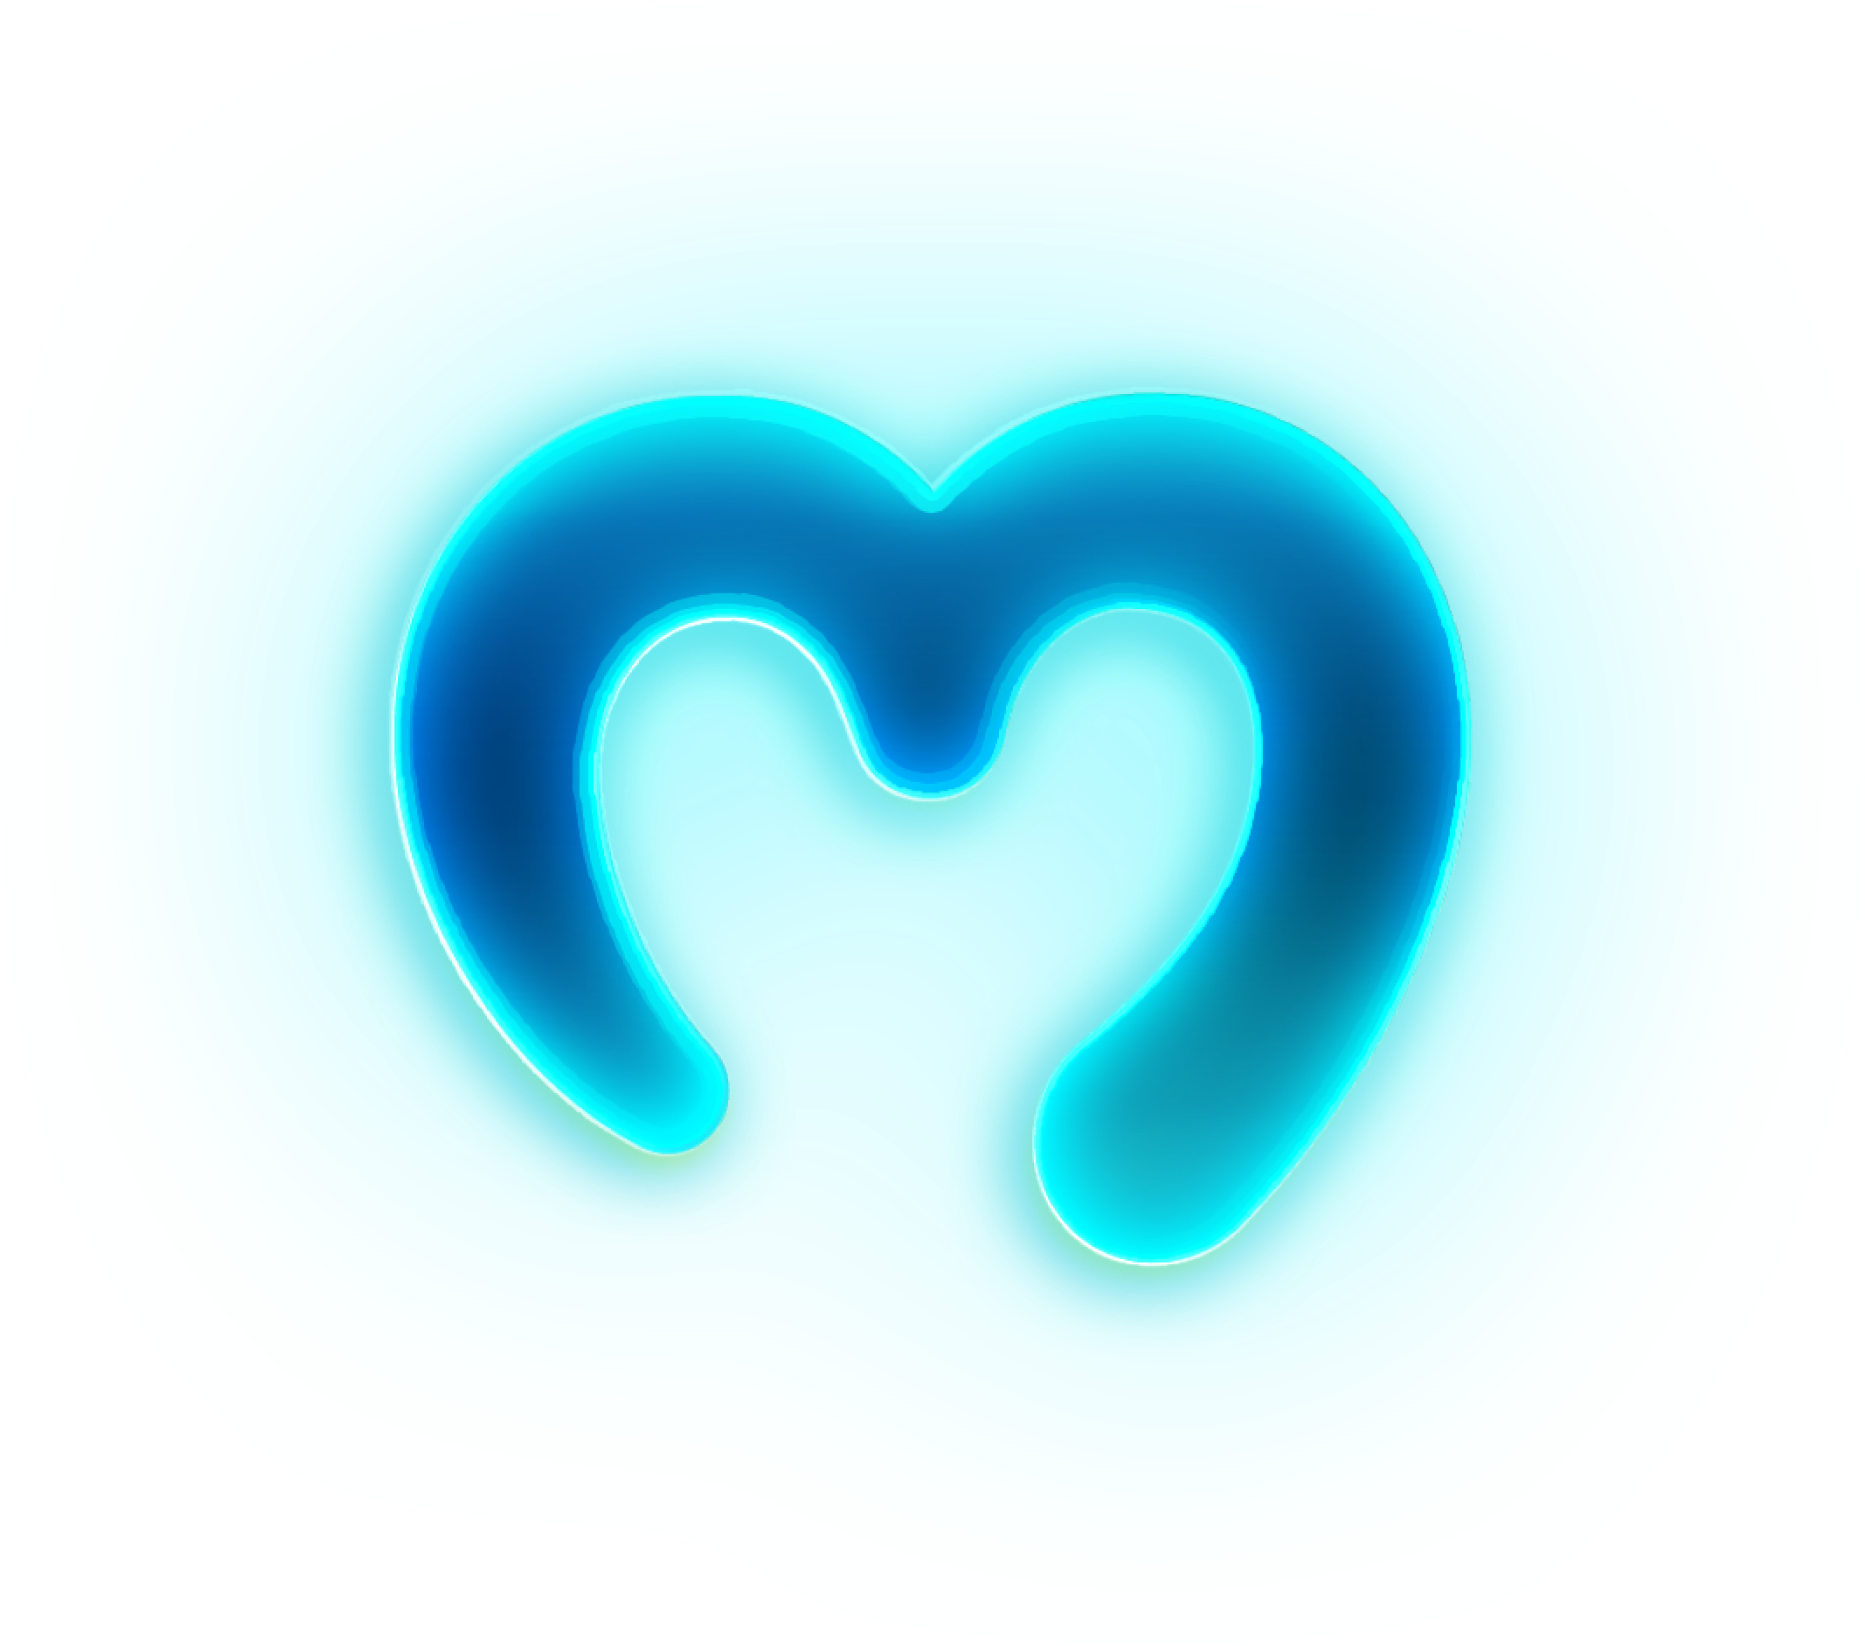 Moralis Logo